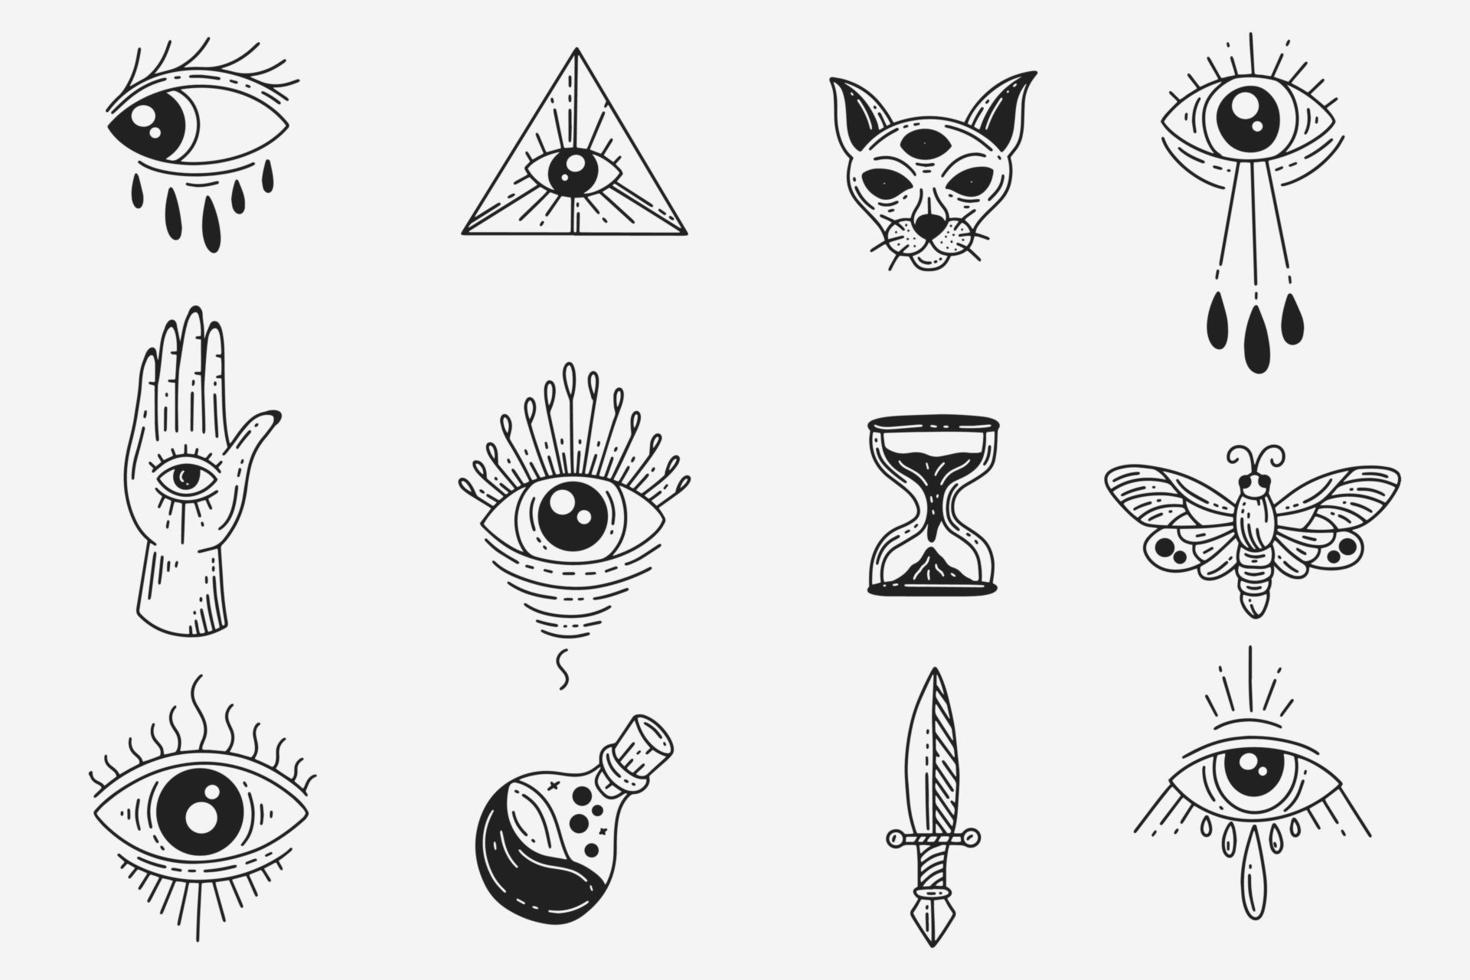 instellen collectie mystiek hemels donker heilig eenvoudig minimalisme tatoeage clipart symbool ruimte doodle esoterische elementen vintage illustratie vector